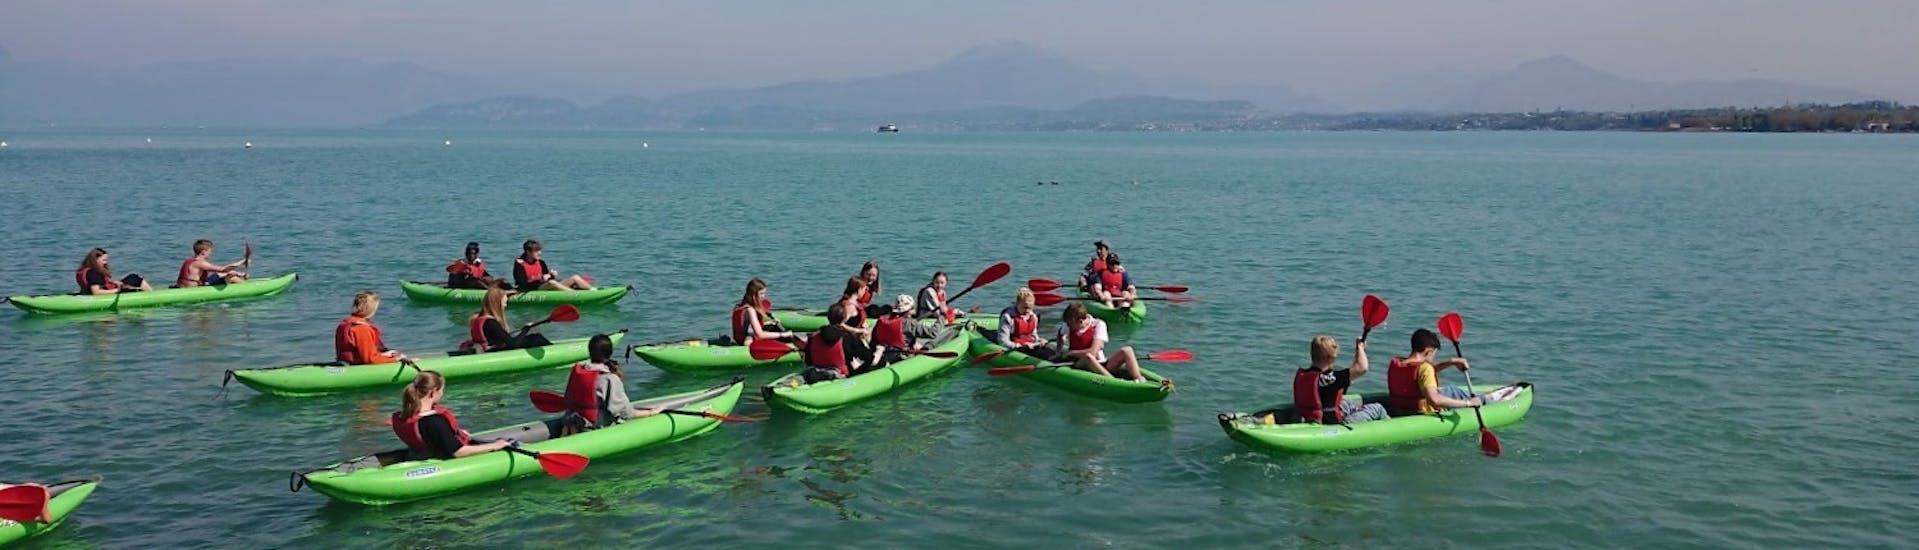 Eine Gruppe liebt die Kajaktour auf dem Gardasee für Familien und Freunde.